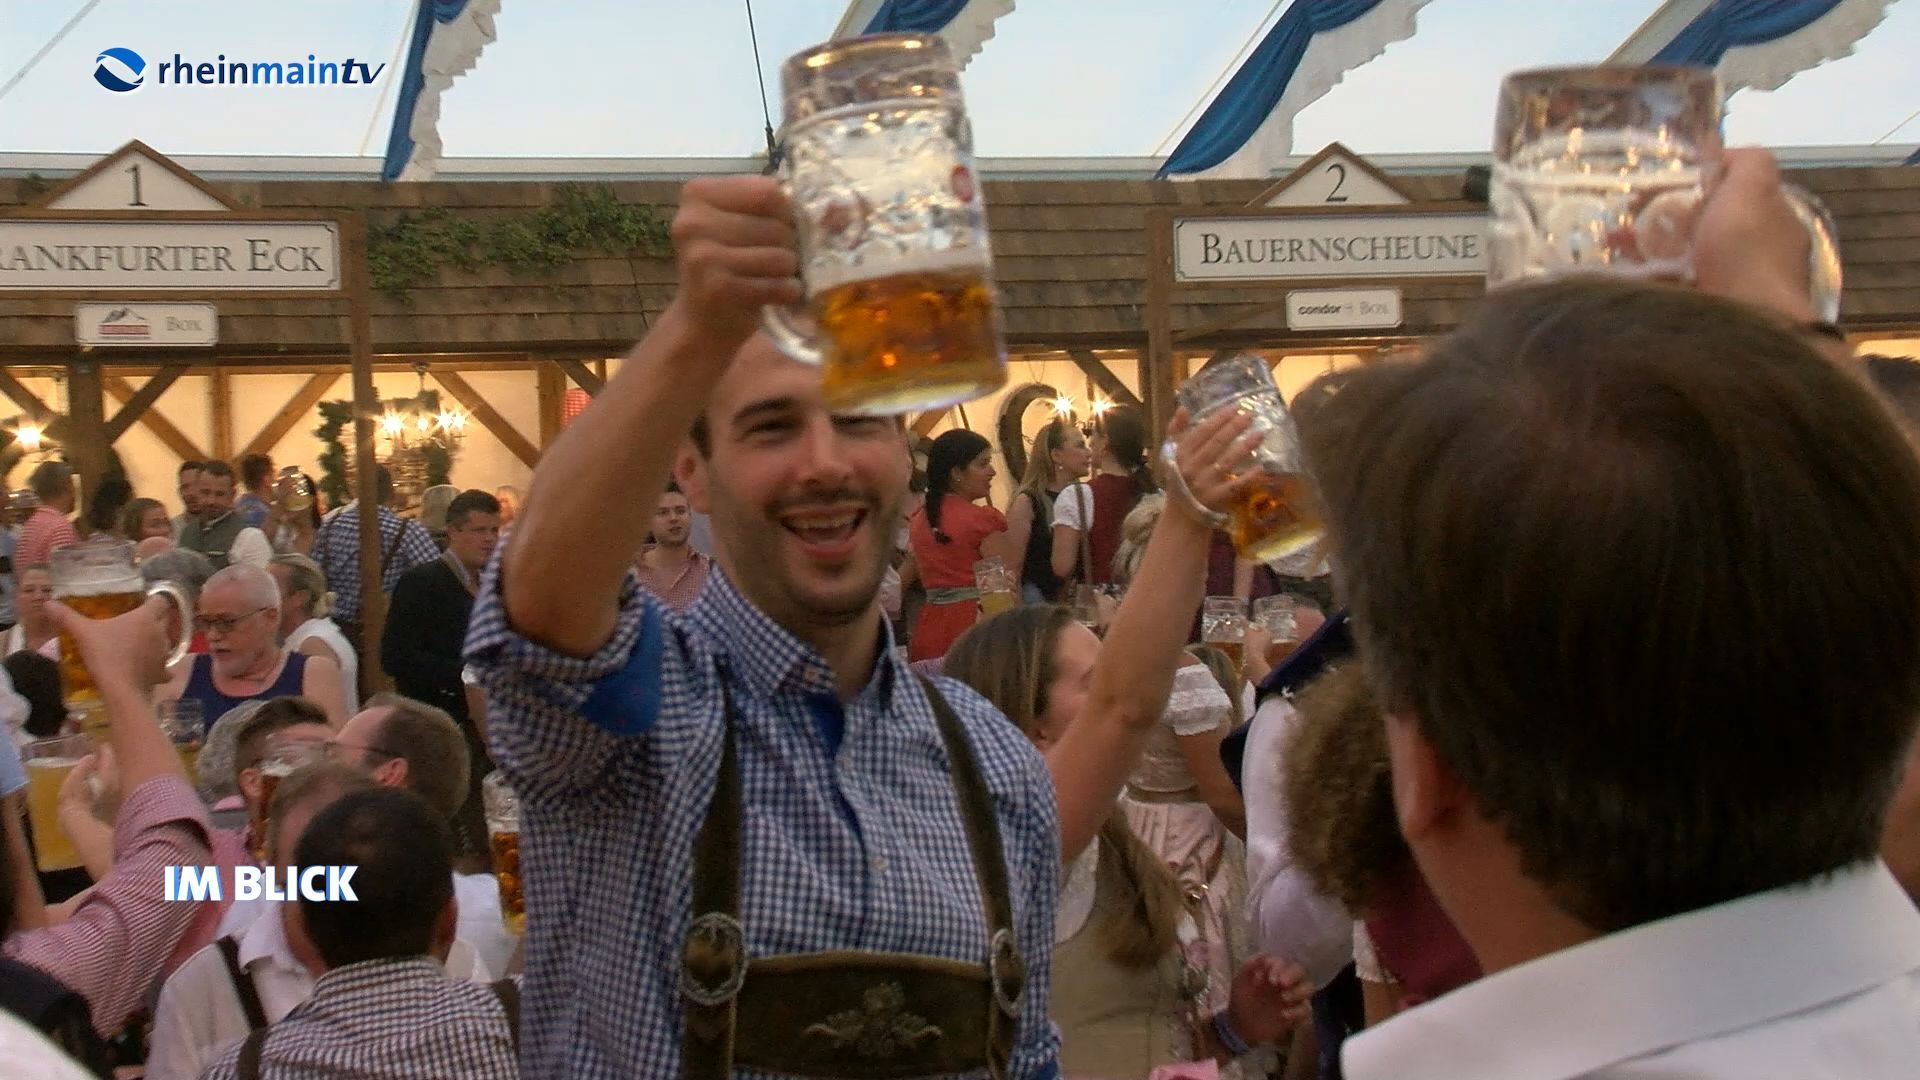 Tapping of the barrel at Frankfurt's Oktoberfest